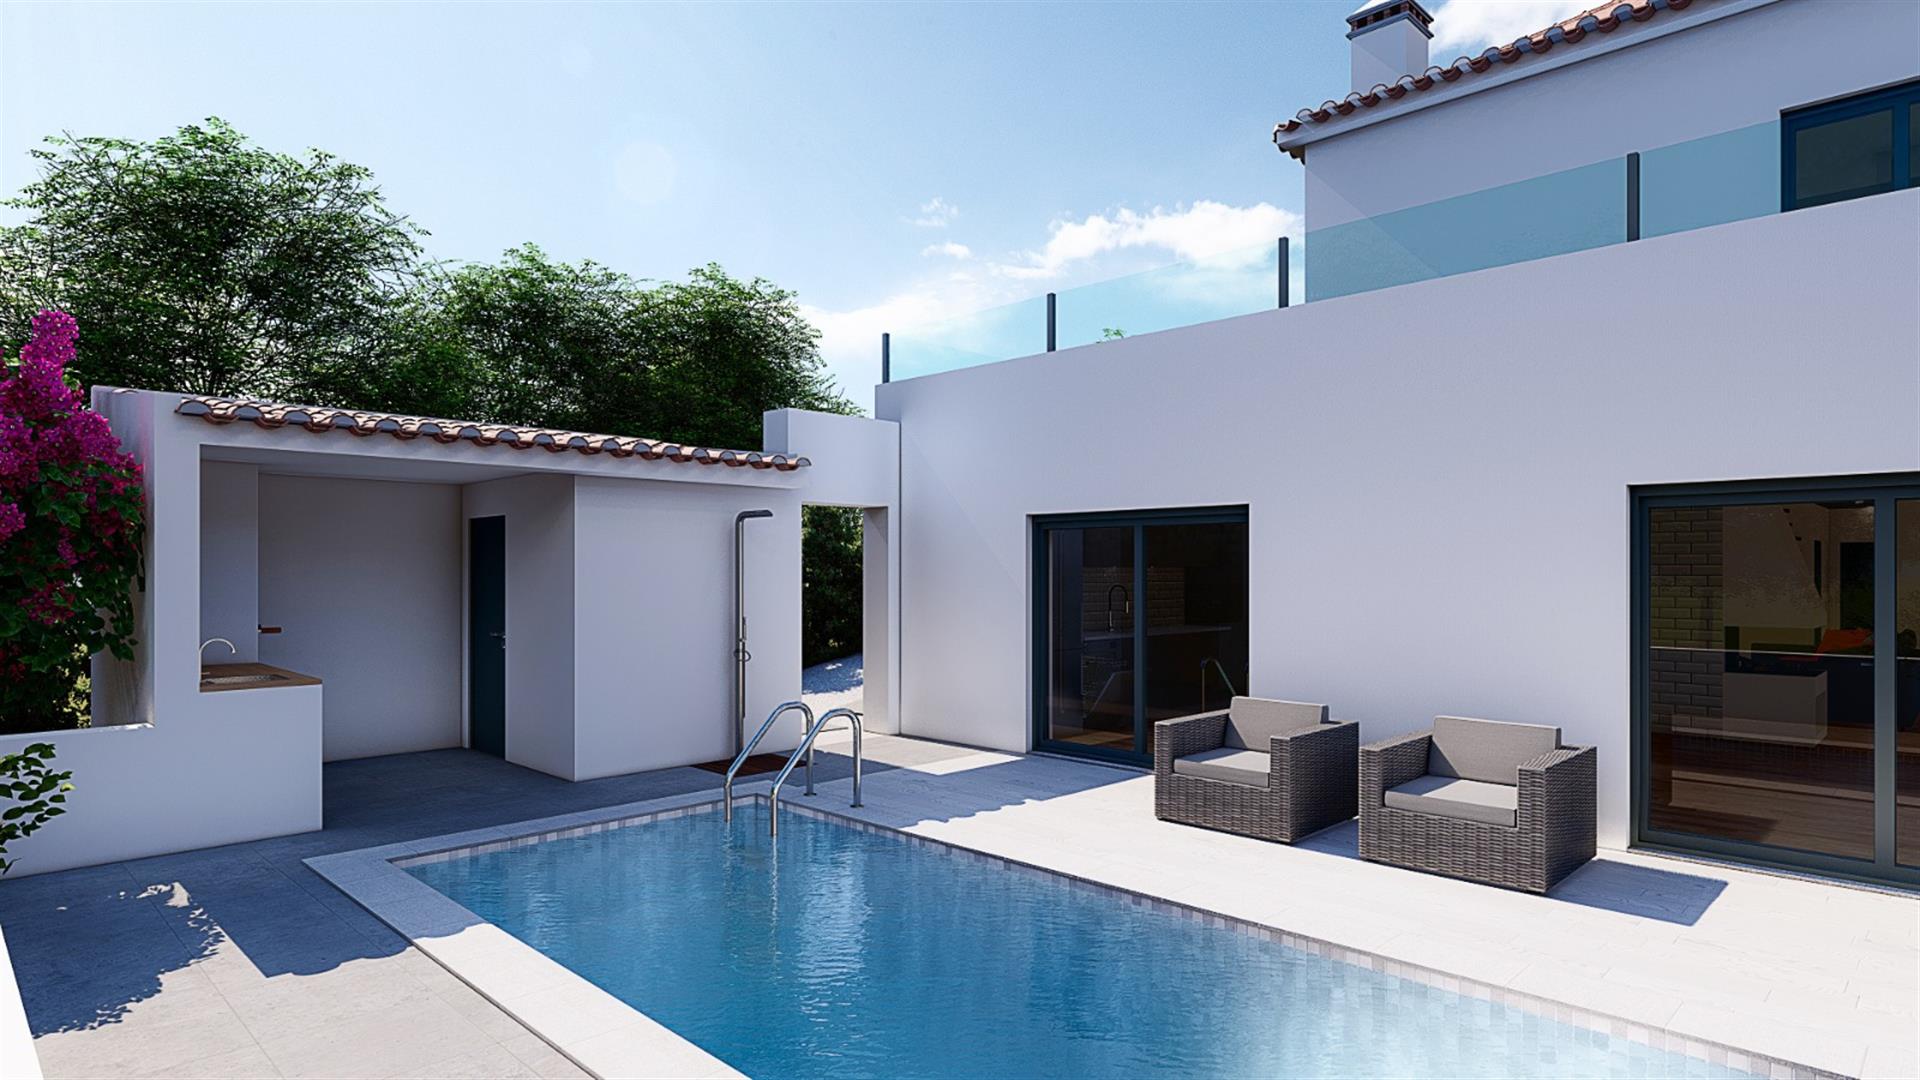 Ausgezeichnete neue T4-Villa auf dem Land und in der Nähe des Strandes und der Stadt Lissabon.